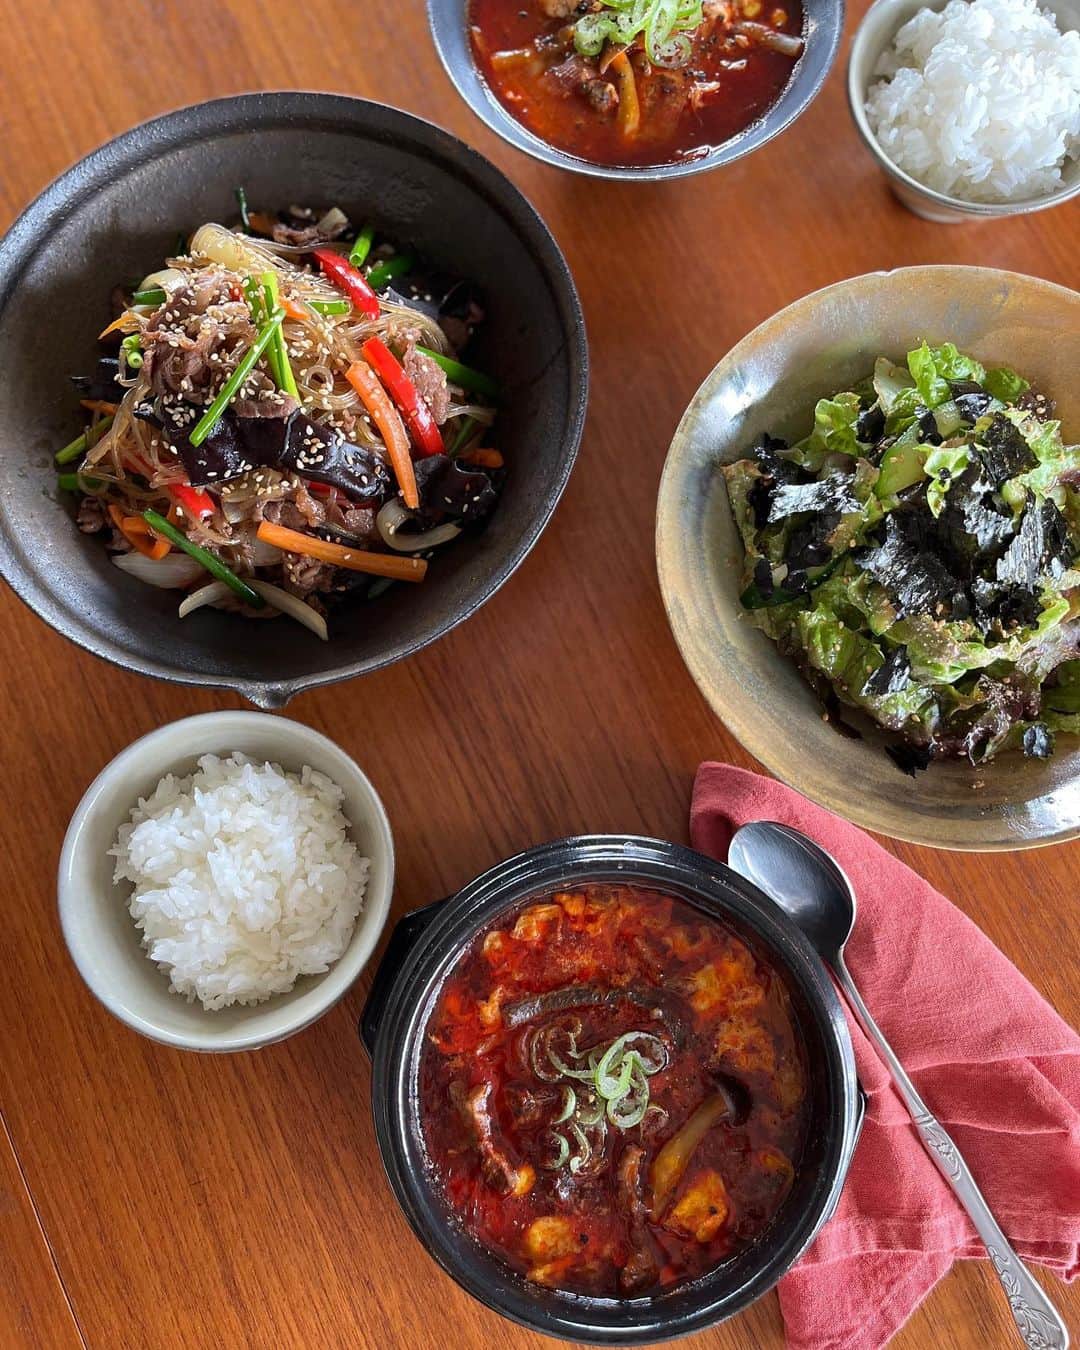 SHIORIさんのインスタグラム写真 - (SHIORIInstagram)「・・・ 　【今夜21時から22期生募集開始】  5月のレッスンは『旅するおうちごはん/韓国篇🇰🇷』でユッケジャン、チャプチェ、韓国風サラダをご紹介しました👩‍🍳  辛いものや韓国料理が好きで、中でもユッケジャンが大好き😍それまではあるもので自己流に作っていましたが、自分で本格的なユッケジャンを作れたら嬉しいなぁと思い、今回は私自身も学ぶところからスタート！  そこから理想のおいしさに辿り着くまでにいつも以上に試行錯誤を繰り返し、その甲斐もあり『辛いだけじゃない🌶牛の旨みをしっかりと感じ、コクのある本格ユッケジャン』が完成！ユッケジャン専門のお店を出そうかなぁと、思えるくらいの自信作が出来ました😭✨  こちらの本格ユッケジャンは時間をかけて牛肉から出汁を取る"手間を楽しむレシピ"ですが、"手軽にパパッと"作りたい日もありますよね。  その日の気分やシチュエーションで選べたらいいなぁと思い、薄切り肉を作って作る"お手軽ユッケジャン"もご紹介！  こちらは煮込み時間5分でありながら、本格ユッケジャンの作り方のポイントを受け継ぎ、しっかりとしたコクとうまみを感じられます。  辛いものは、自分で作ると自分好みに辛さ調整が出来るのがいいですね🌶  ついユッケジャンの紹介に熱が入ってしまいますが😂チャプチェとサラダも大のお気に入りです。過去には、キンパやチヂミ、プルコギレッスンも行ったので、自宅で韓国料理の幅が広がったと喜んでもらえて嬉しいです。  みなさんの復習の様子は #ateliershiorionline  や @ateliershiori.online のタグからどどうぞ🏷  韓国ドラマを観ると、無性に食べたくなってしまうので我が家もチャミスルやマッコリとともに食卓に登る回数が激増中🇰🇷✨  最新の韓国レッスンをはじめ、過去レッスン全てを学べるのでユッケジャンが好きな方も、チャプチェが好きな方も、韓国ドラマと自作の韓国料理を楽しみたい方も！ぜひ、習得してみてくださいね✨  6月はシーフードカレー🍛 こちらは魚介のうまみをギュッと凝縮したごちそうカレーをお楽しみに👩‍🍳  ________________  ＼＼今夜22期生を募集します／／ お申し込みは、31日の17時までです。（定員に達し次第締め切りとなります🙇‍♀️）プロフィールページのURLからお願いいたします⚠️その際、ご自身のユーザーネーム（ID）漏れが非常に多くなっておりますので焦らず、必要事項を全てご記入お願いいたします🙇‍♀️  そして、早いもので次の6月で、  @ateliershiori.online  の2年目が終わります。7月からは3年目に向け年間メニューを発表しました！ こちらの投稿の一番下にもご紹介していますので、ご入会をご検討中の方はぜひご確認ください📝1st、2ndのメニューリストは公式サイドでご覧頂けます。  『3rdseason 年間メニューリスト』  ー7月ー 夏のパスタ2種 ・ジェノベーゼソースのパスタ ・トマトの冷製パスタ ・白身魚のカルパッチョ  ー8月ー 旅するおうちごはん/ベトナム篇 ・ベトナム風揚げ春巻き ・フォー・ガー （チキンのフォー）  ー9月ー 秋の和定食 ・がんもどき ・秋刀魚ごはん ・野菜の小鉢 ・汁物  ー10月ー 中華おかず2種 ・豚の豆ち蒸し ・天津飯 ・杏仁豆腐  ー11月ー ・コロッケ ・メンチカツ  ー12月ー ・ビーフシチュー、他  ー1月ー リクエストメニュー  ー2月ー ・ちらし寿司 ・はまぐりのお吸い物  ー3月ー 旅するおうちごはん/フランス篇 ・チキンフリカッセ 　（鶏のクリーム煮込み） ・お惣菜2種  ー4月ー 春のお弁当  ー5月ー 30分で晩ごはん ※平日、無理なく30分で作れる バランスの取れた献立をご紹介します  ー6月ー 中華おかず2種 ・海老マヨ ・肉団子の黒酢あん  ーーーーーーーーーー  #SHIORIレシピ #オンラインレッスン #食卓から暮らしを豊かやに #本格ユッケジャン #お手軽ユッケジャン #牛をギューっとユッケジャン #ユッケジャンはまっちゃうじゃん #雑じゃない雑菜チャプチェ #コッチョリサラダ」5月25日 17時37分 - shiorikaregohan